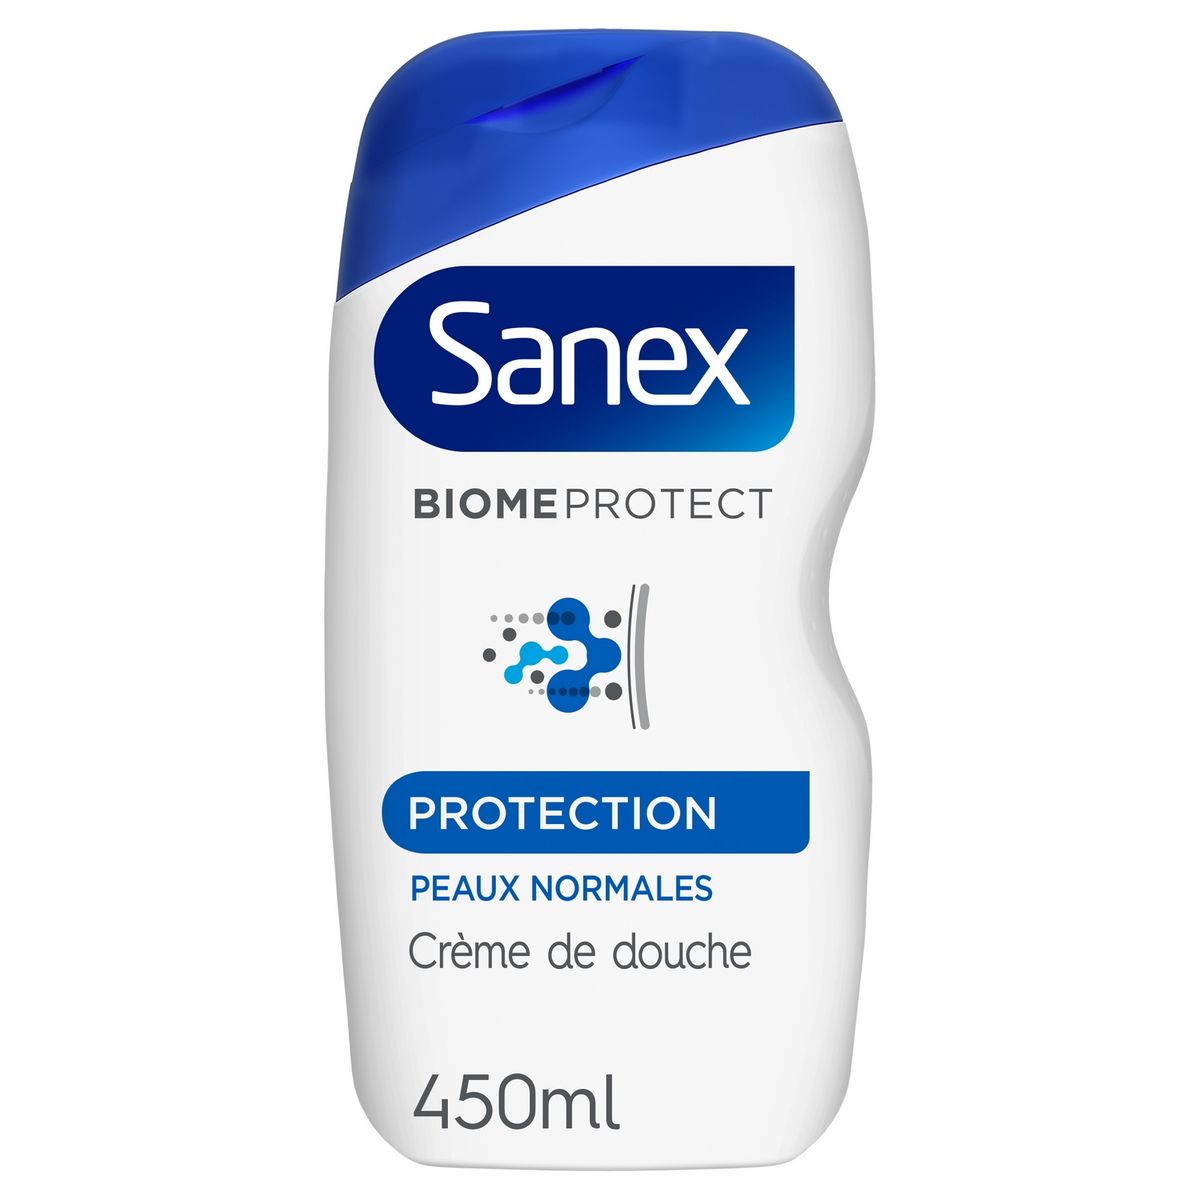 SANEX Crème de douche protection peaux normales 450ml